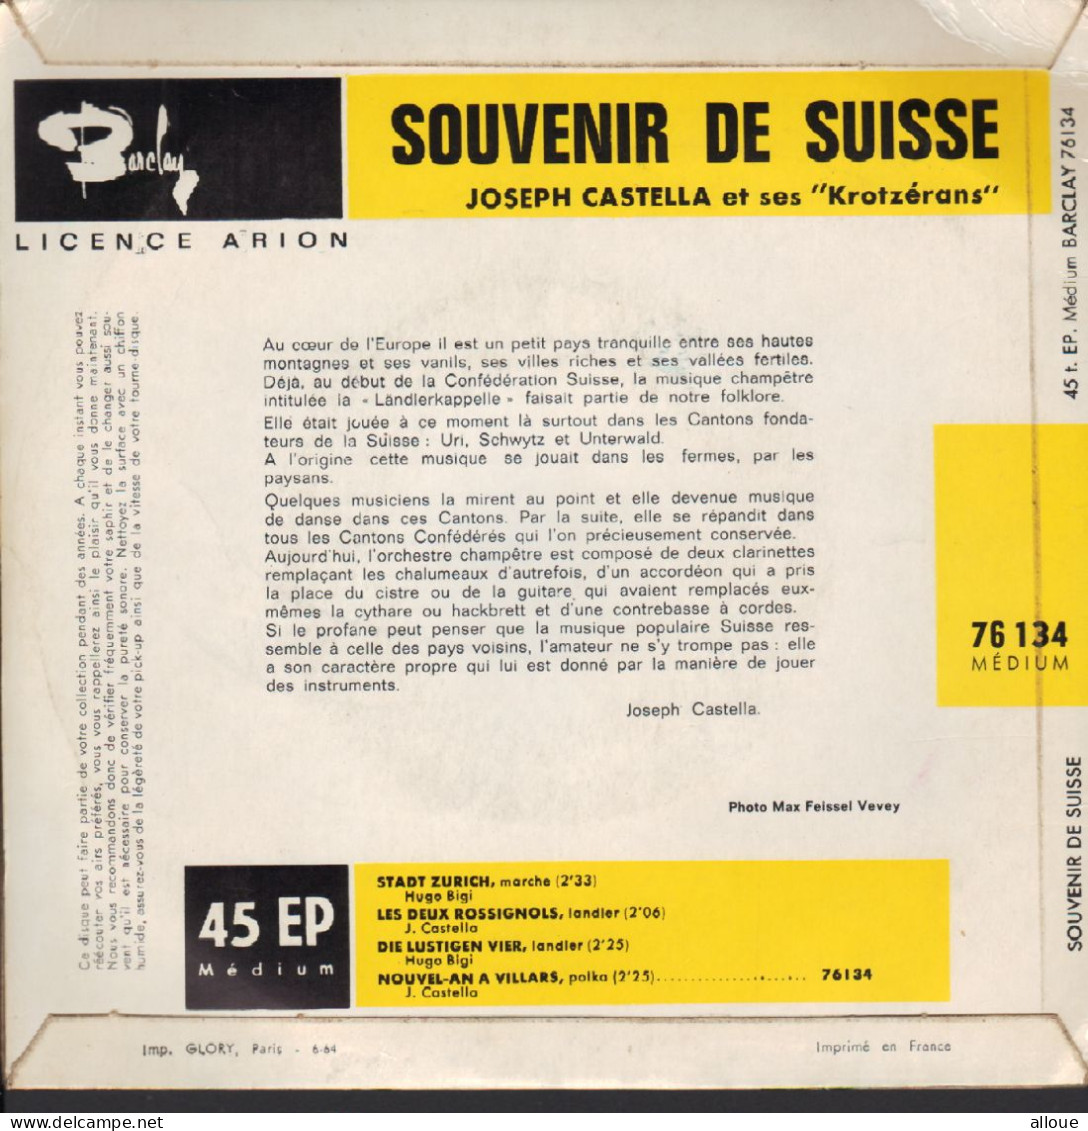 JOSEPH CASTELLA ET SES KROTZERANS  SOUVENIRS DE SUISSE - FR EP - STADT ZURICH + 3 - World Music